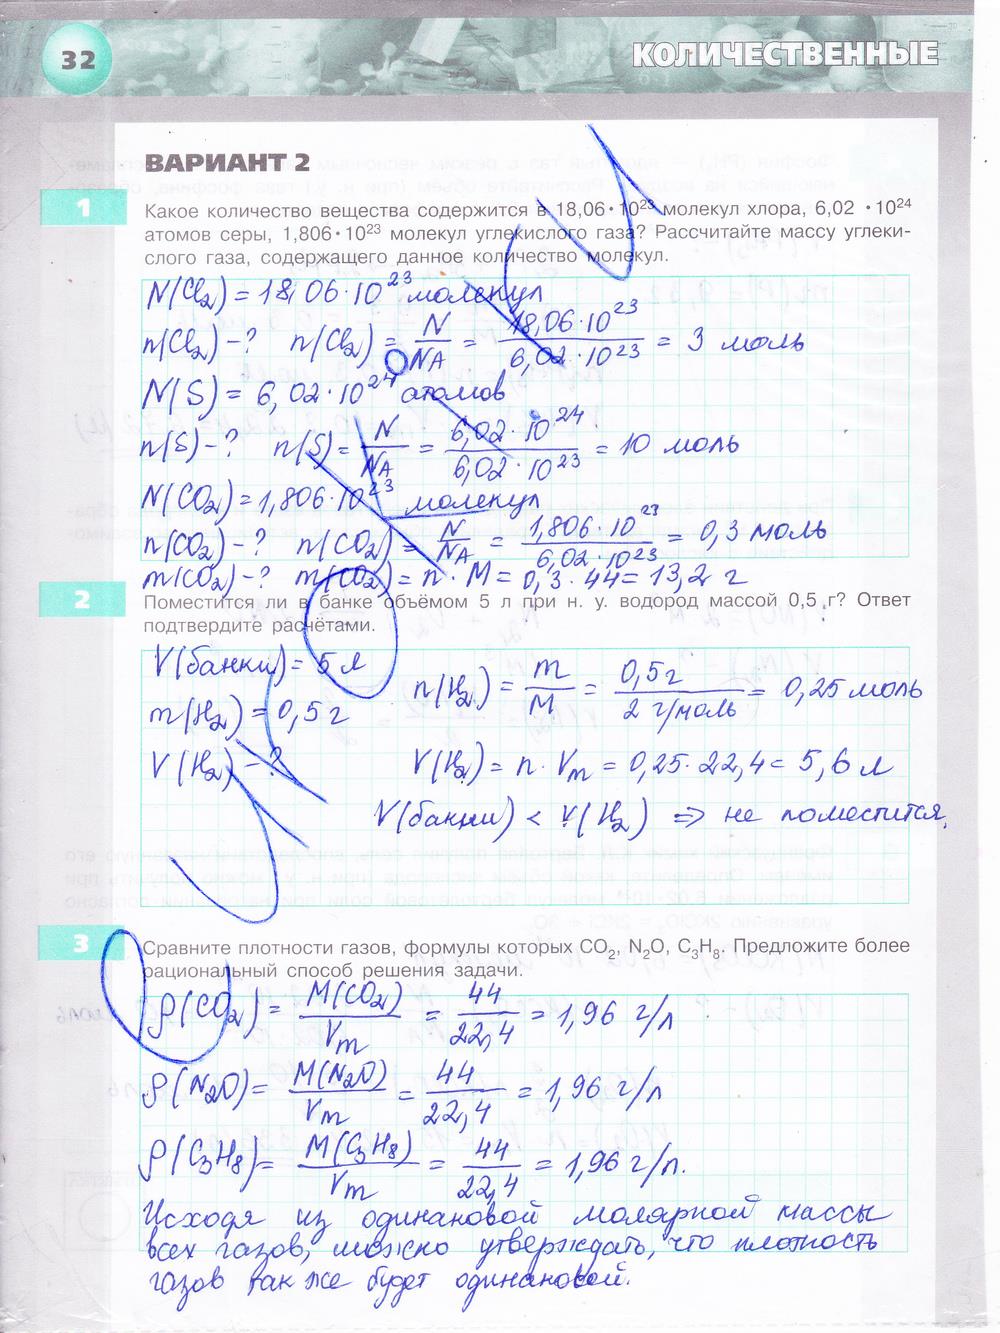 гдз 8 класс тетрадь-экзаменатор страница 32 химия Бобылева, Бирюлина